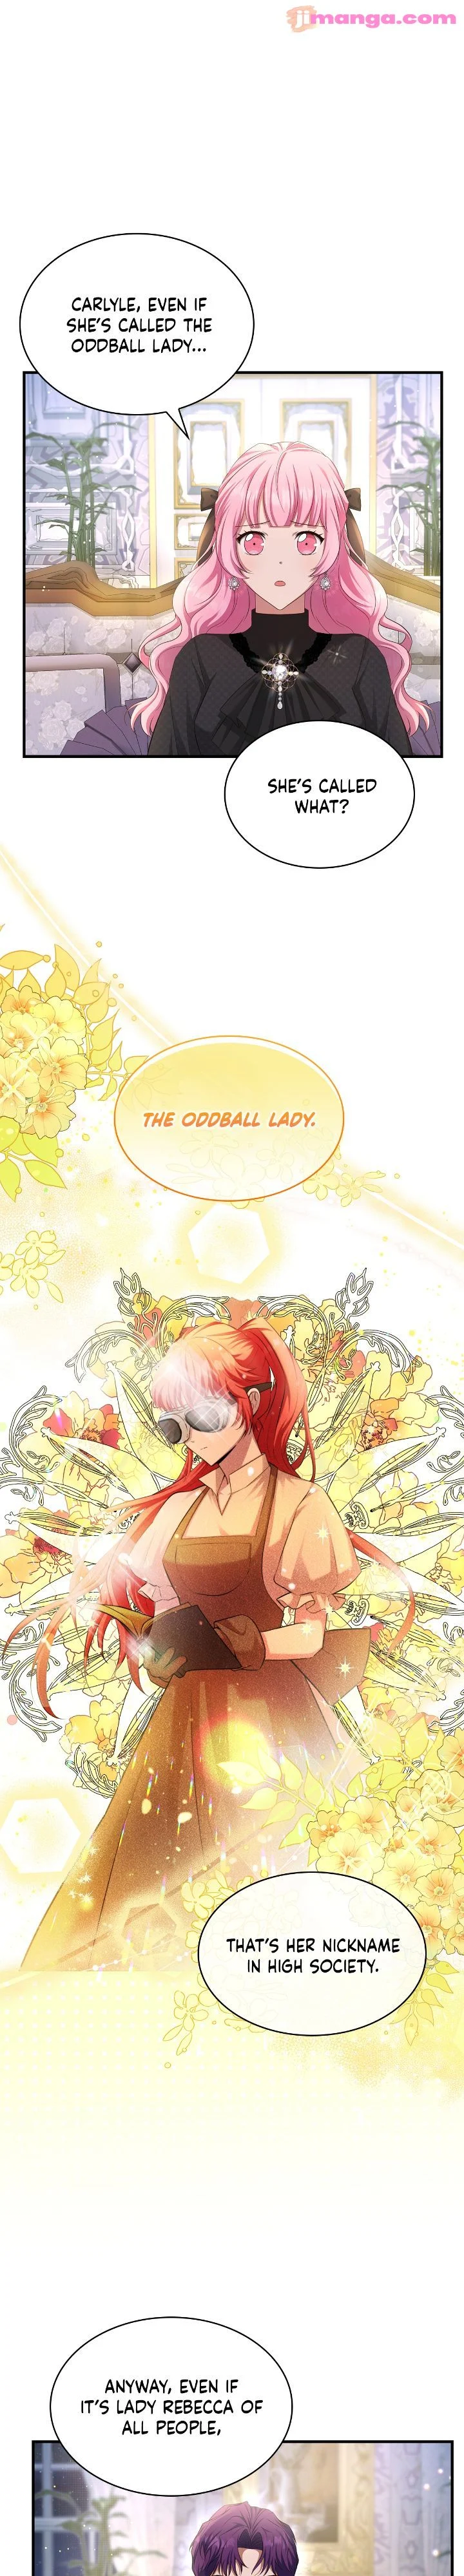 The Oddball Lady’s Fiancé chapter 8